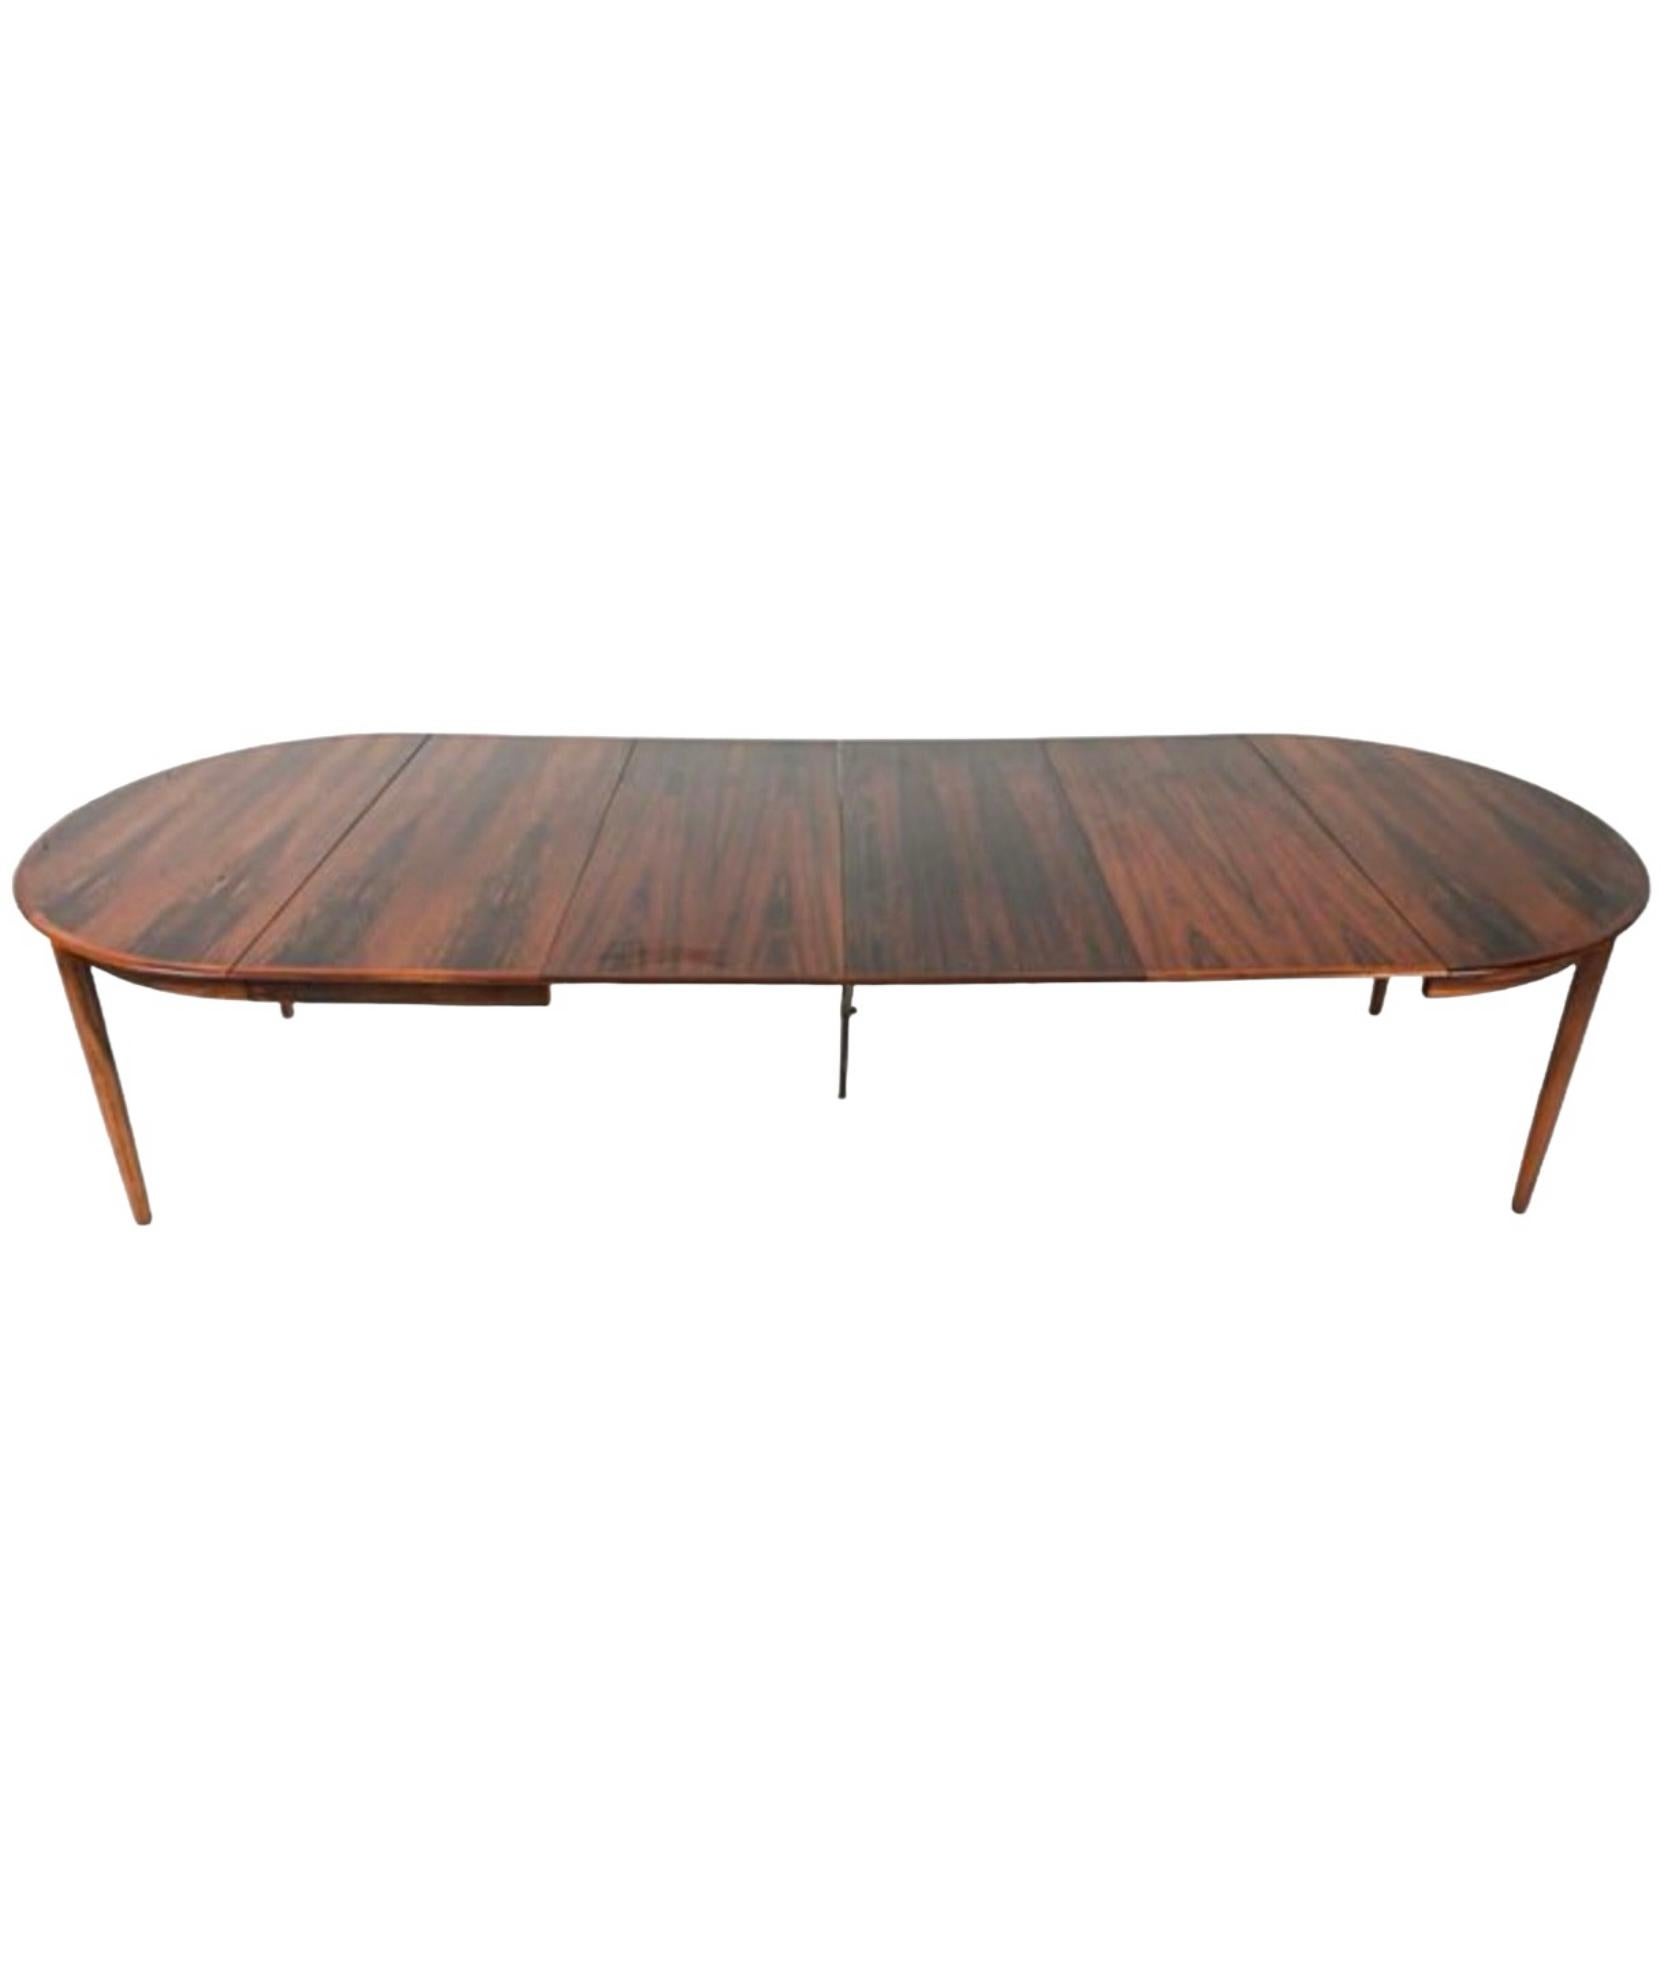 Il s'agit d'une table de salle à manger ronde moderne danoise en bois de rose, à la manière d'Arne Vodder. La table a 4 feuilles de 20 pouces, ce qui est très inhabituel. Il porte le cachet du Danemark. Il est en très bon état.

Mes frais de port